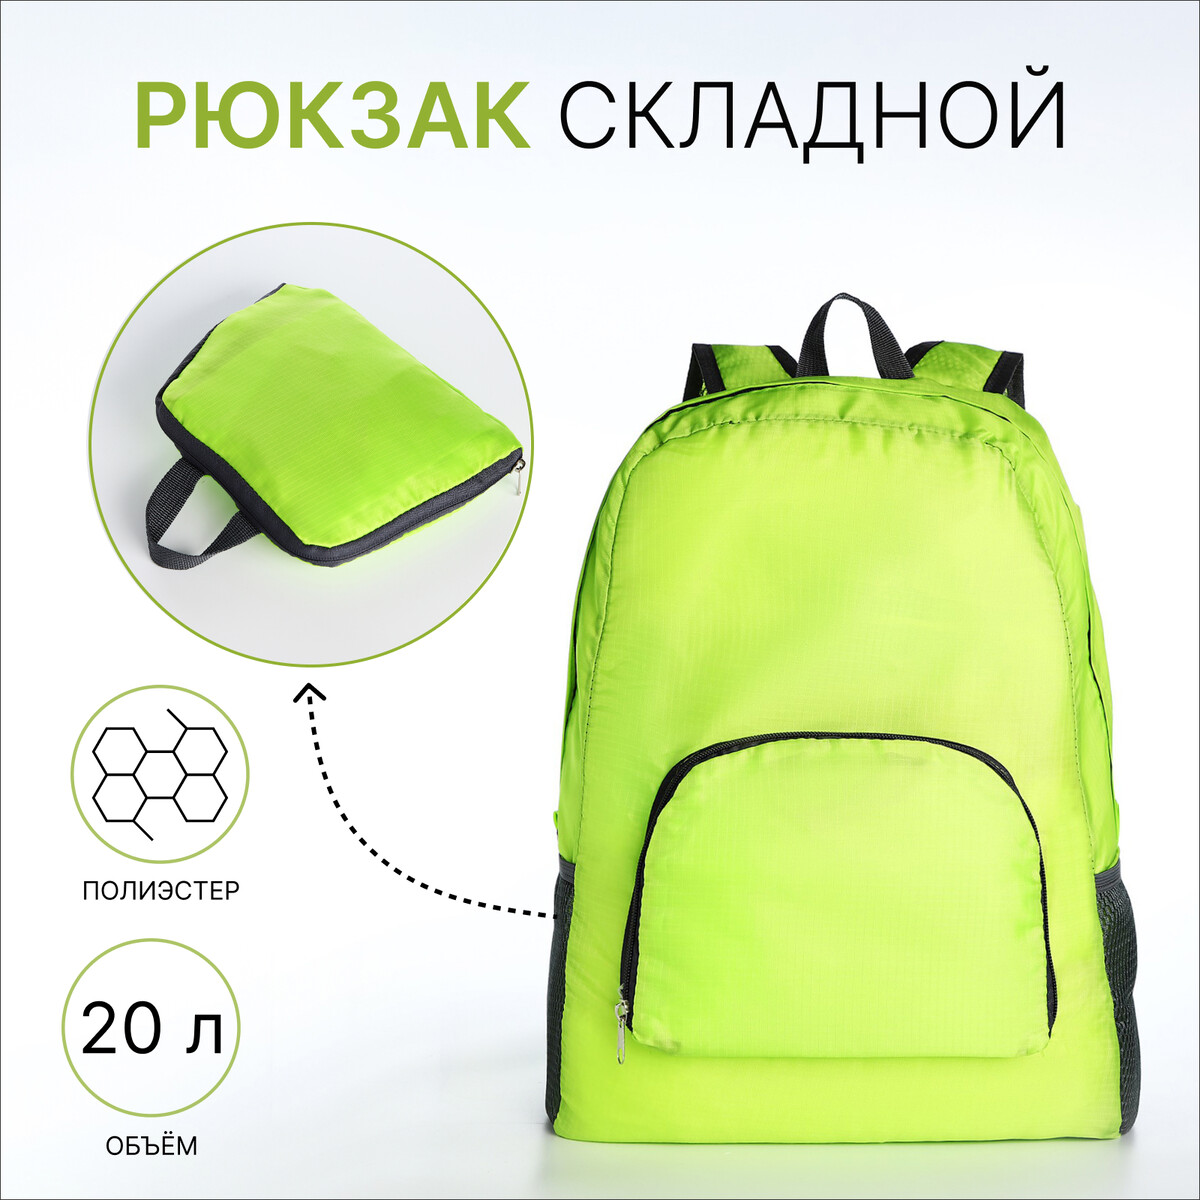 Рюкзак складной, отдел на молнии, наружный карман, 2 боковых кармана, цвет зеленый